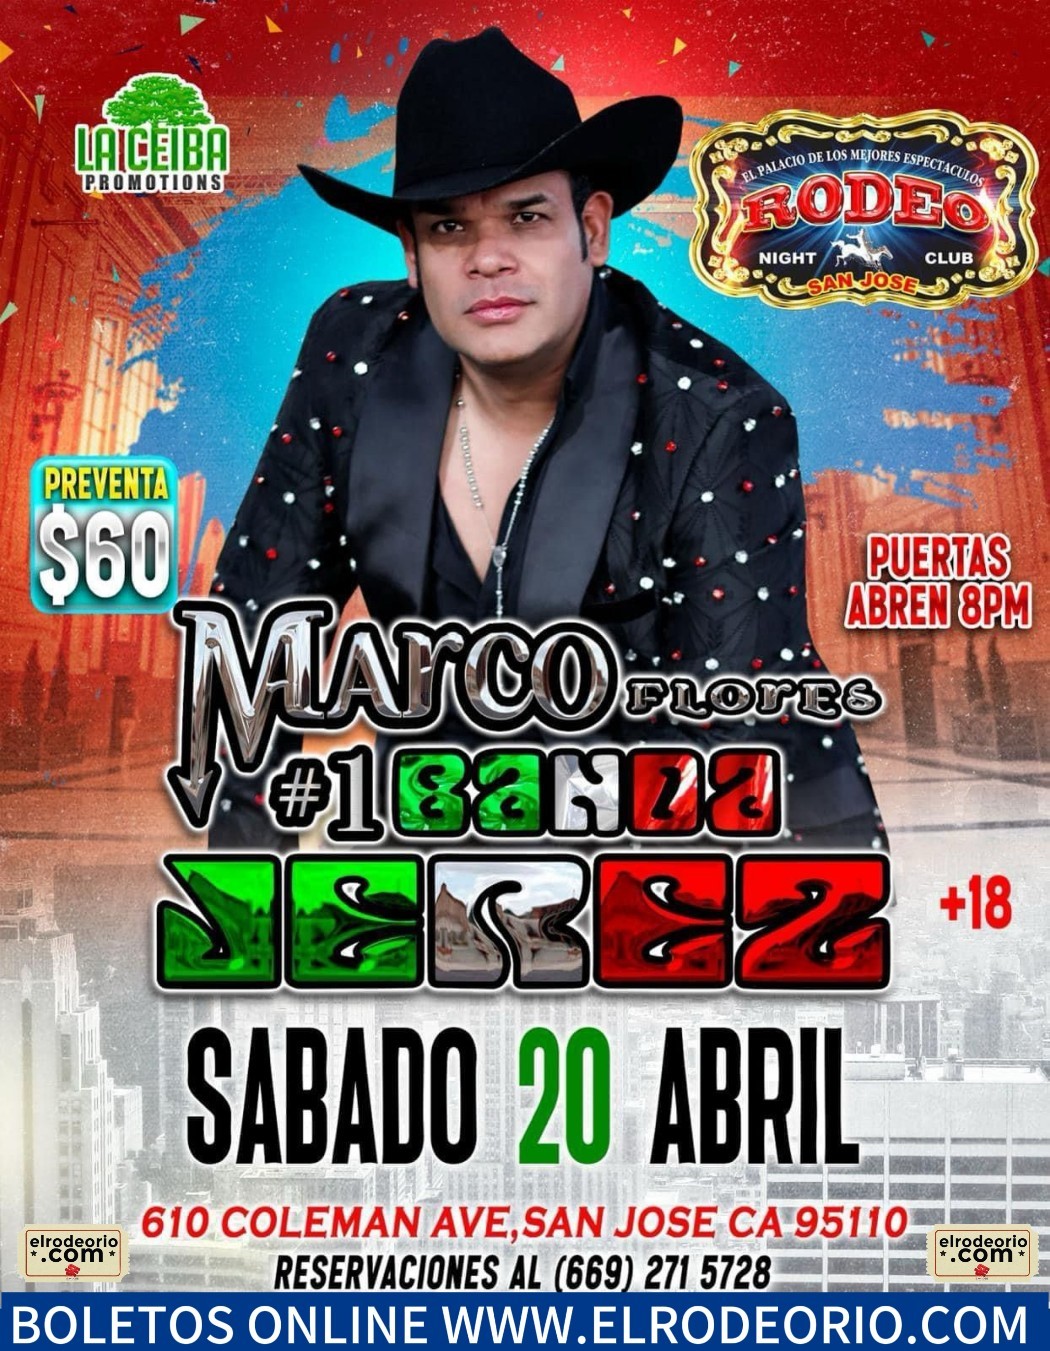 Marco Flores y La #1 Banda Jerez  on avr. 20, 20:00@Club Rodeo - Achetez des billets et obtenez des informations surelrodeorio.com sanjoseentertainment